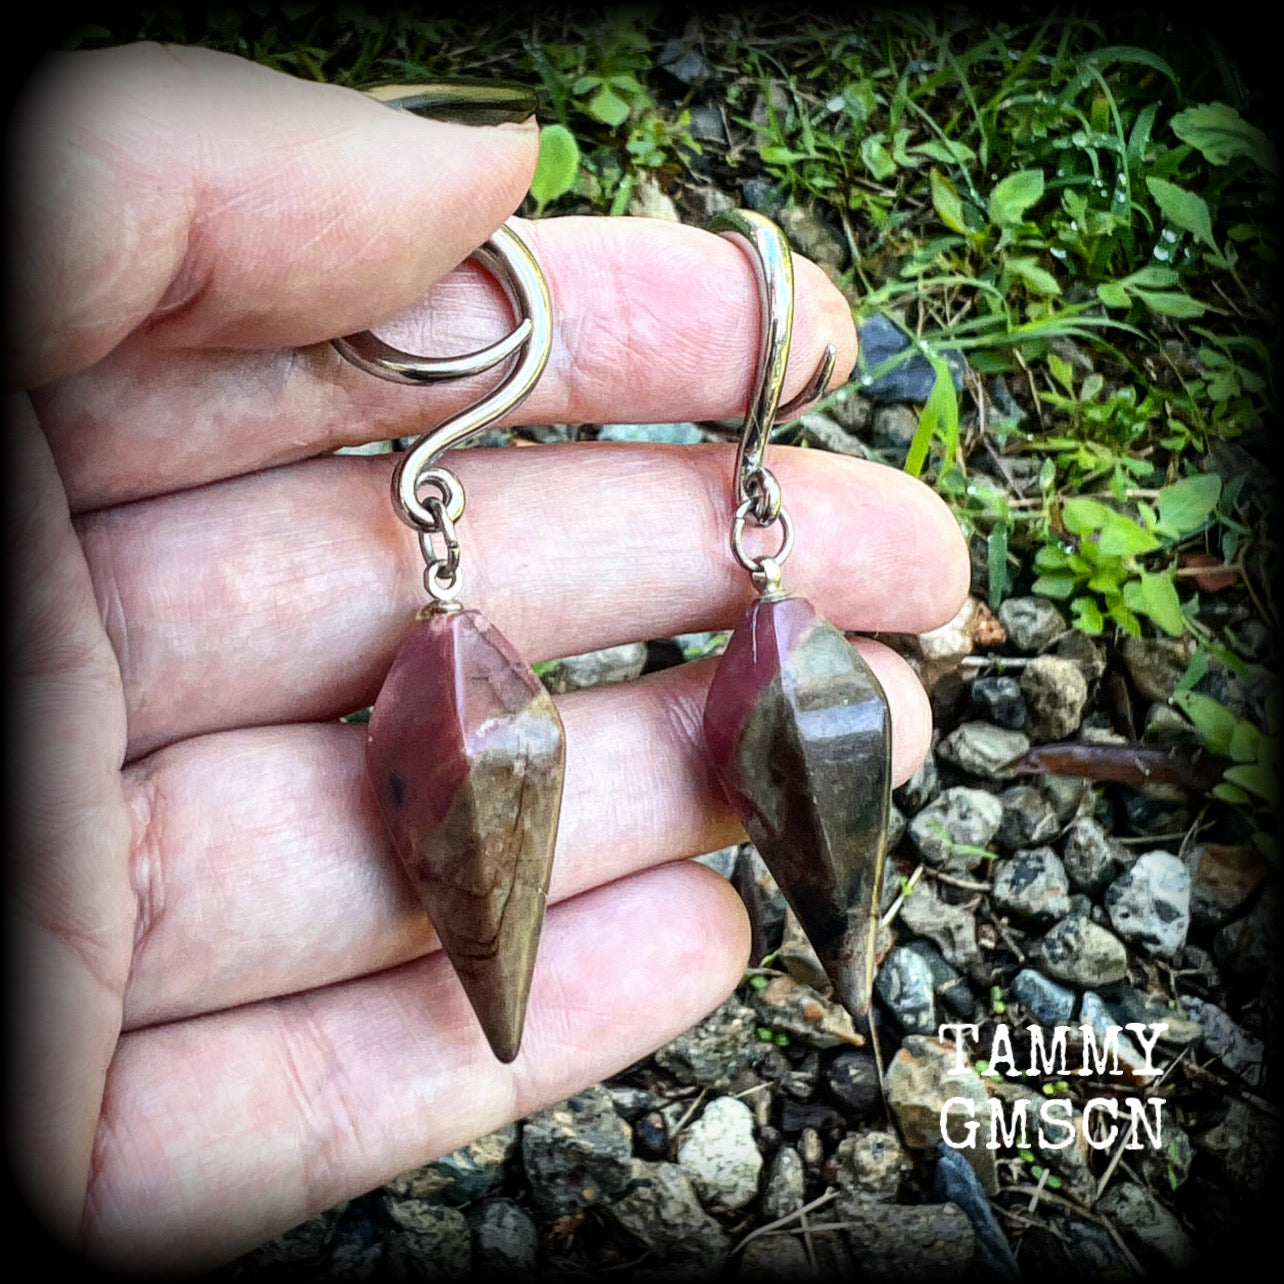 Indian agate gauged earrings-Hanging gauges